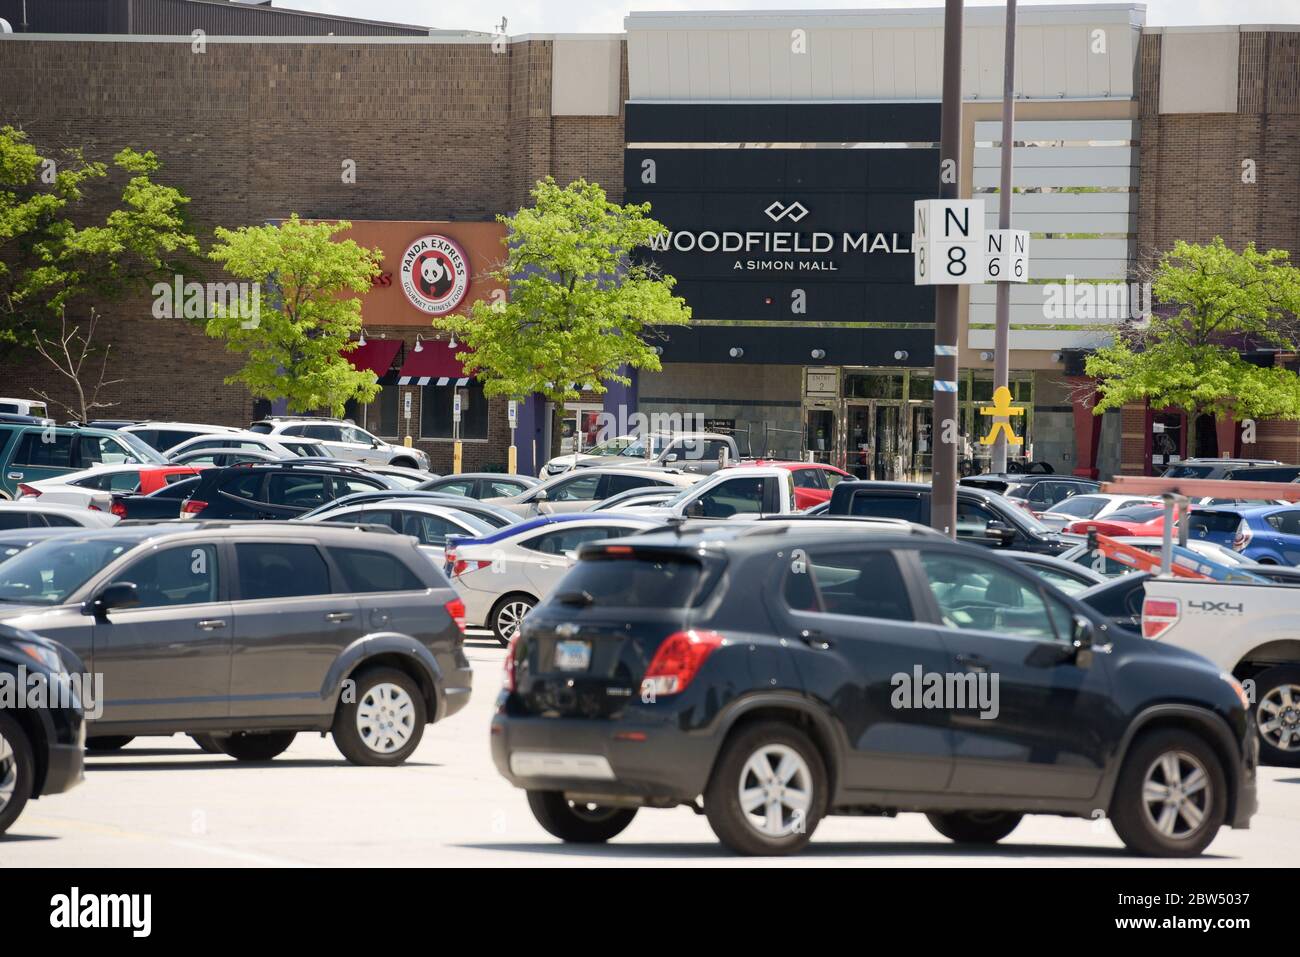 Schaumburg, Illinois, EE.UU. 29 de mayo de 2020. Woodfield Mall en Schaumburg, Illinois reabre para compras en interiores por primera vez desde finales de marzo, cuando el estado de Illinois impuso una estancia en el hogar debido a la nueva coronavirus (COVID-19). La fase 3 del plan de reapertura de Illinois permite que los centros comerciales reabran y operen con horas, capacidad y restricciones reducidas que incluyen a los compradores que deben usar cubiertas para la cara. Woodfield es el centro comercial más grande del estado de Illinois. Crédito: Mark Black/ZUMA Wire/Alamy Live News Foto de stock